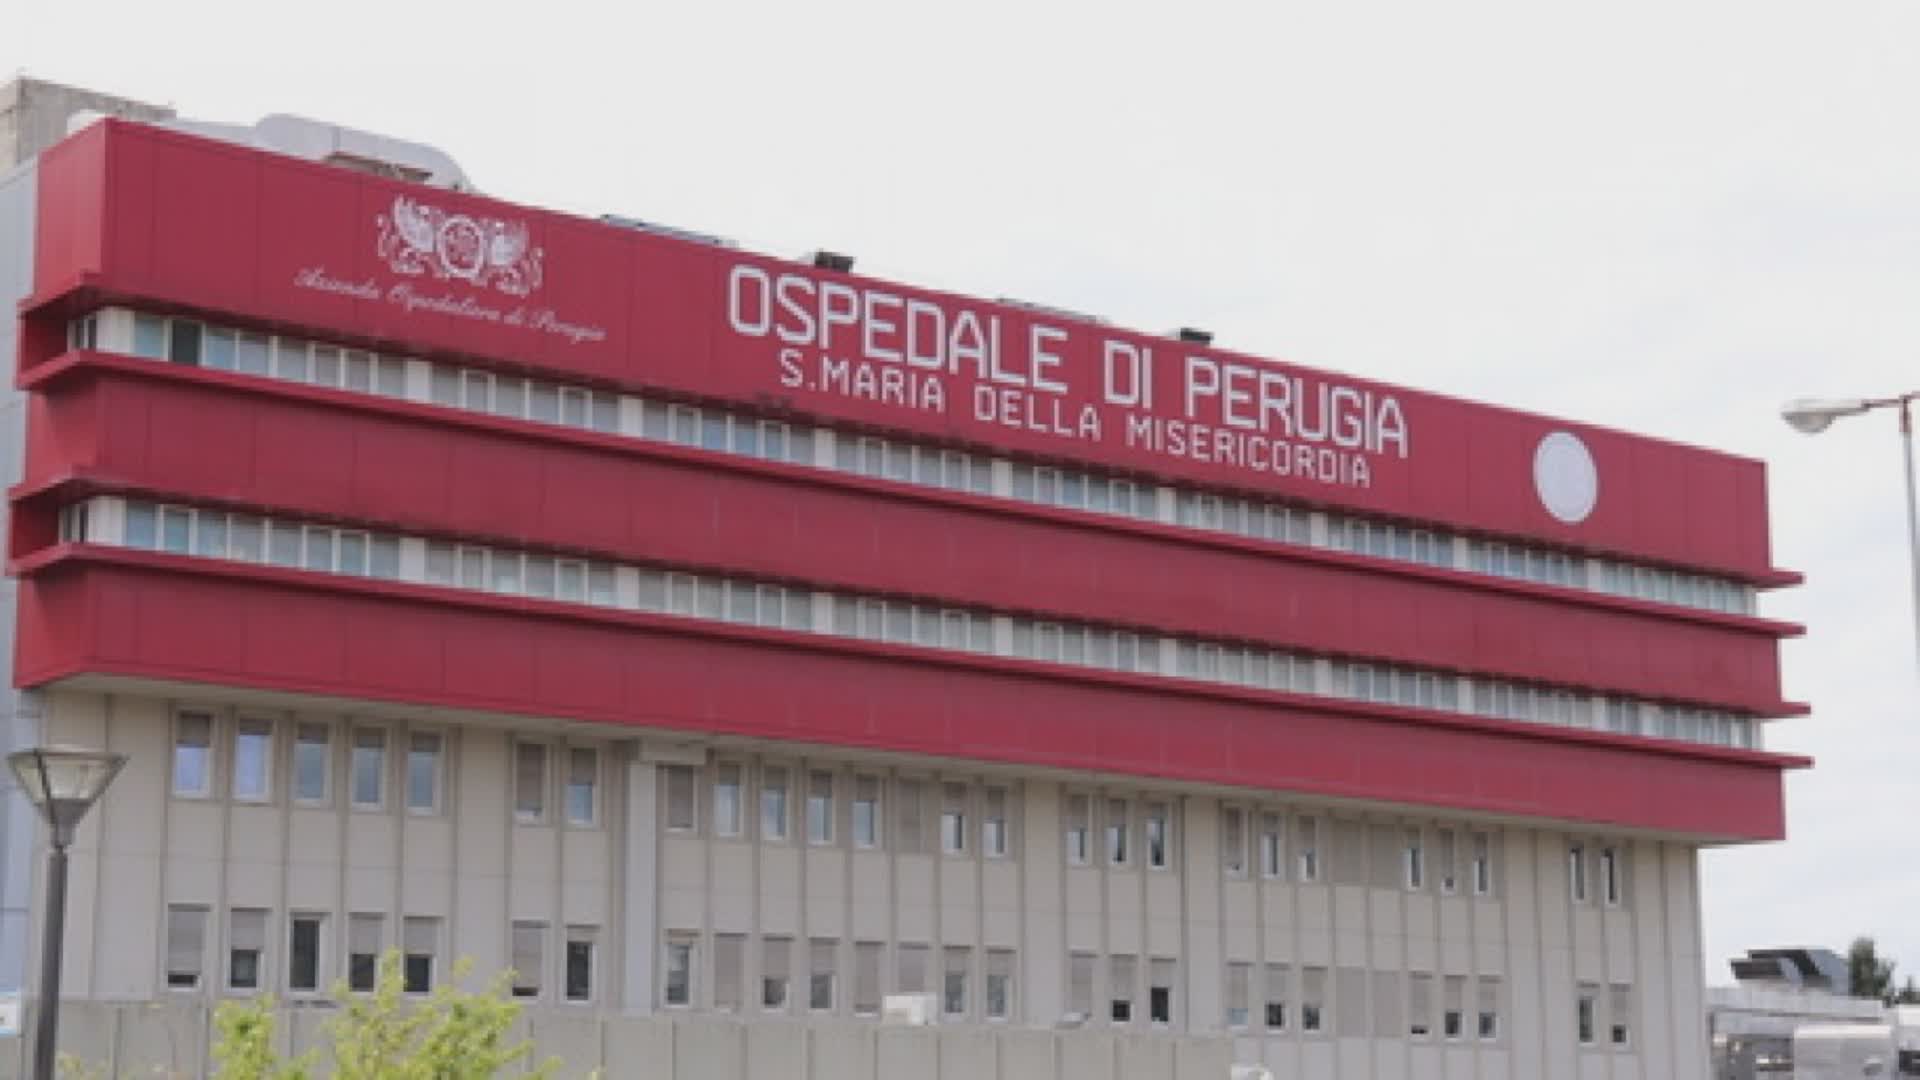 Cinque positivi all’ospedale di Perugia